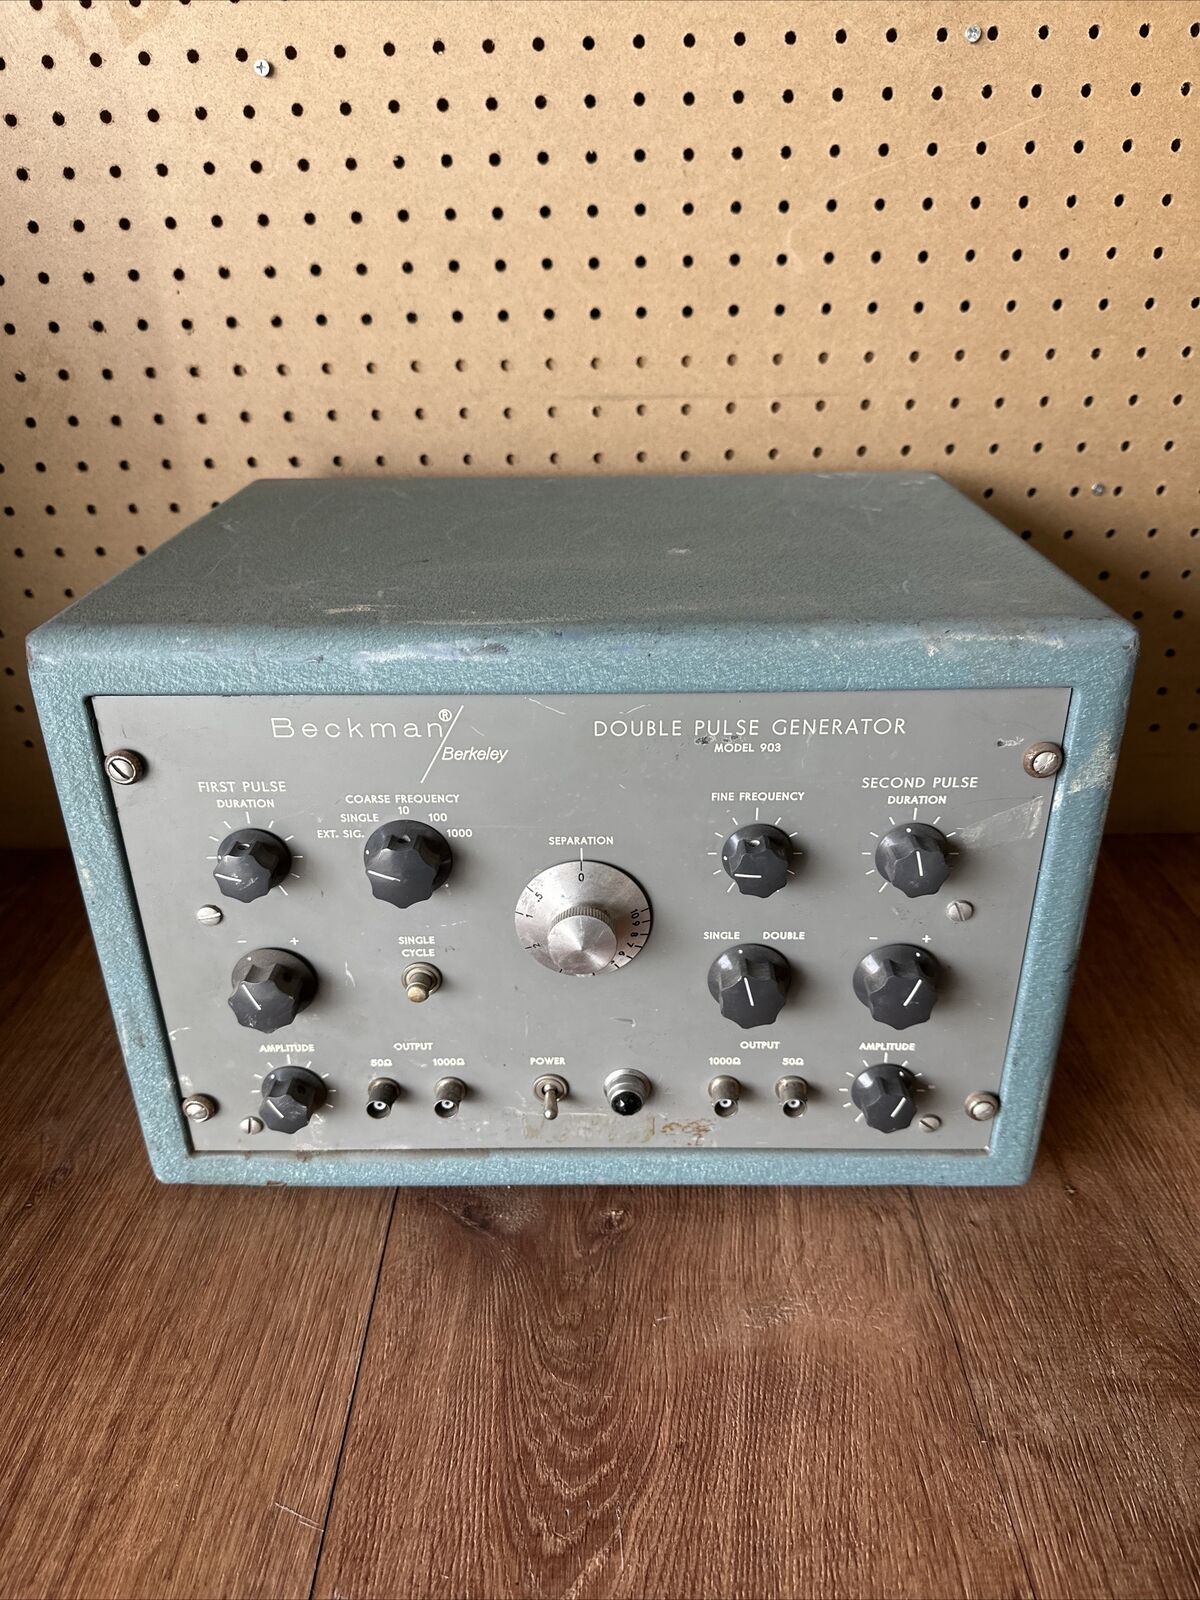 Vintage Beckman /Berkeley Instruments Model 903 Double Pulse Generator Untested